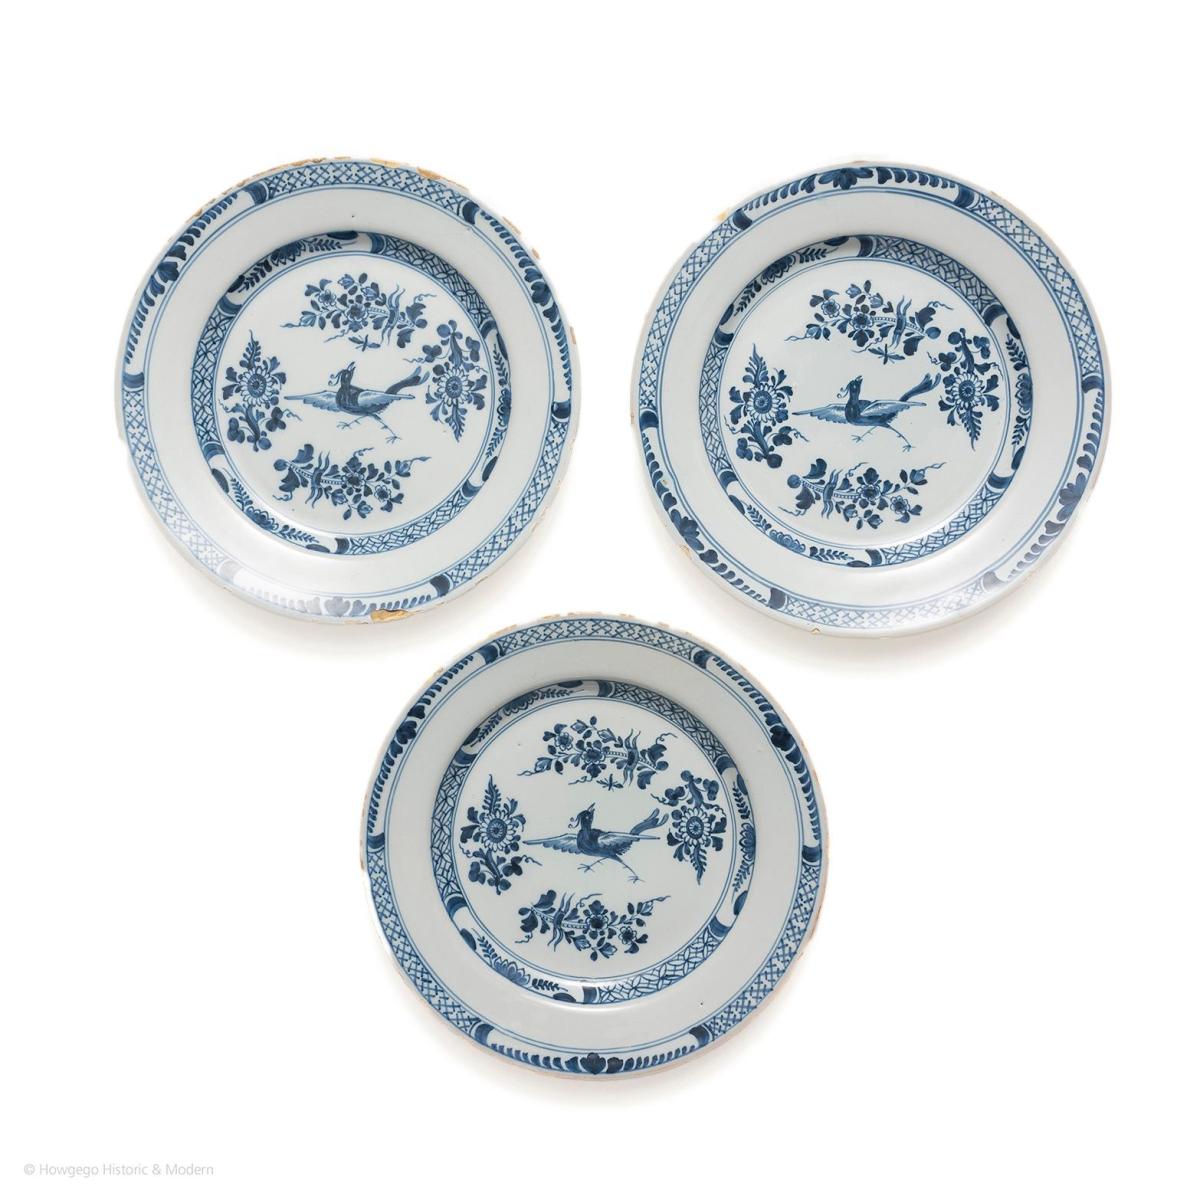 English Delftware Plates, circa 1760